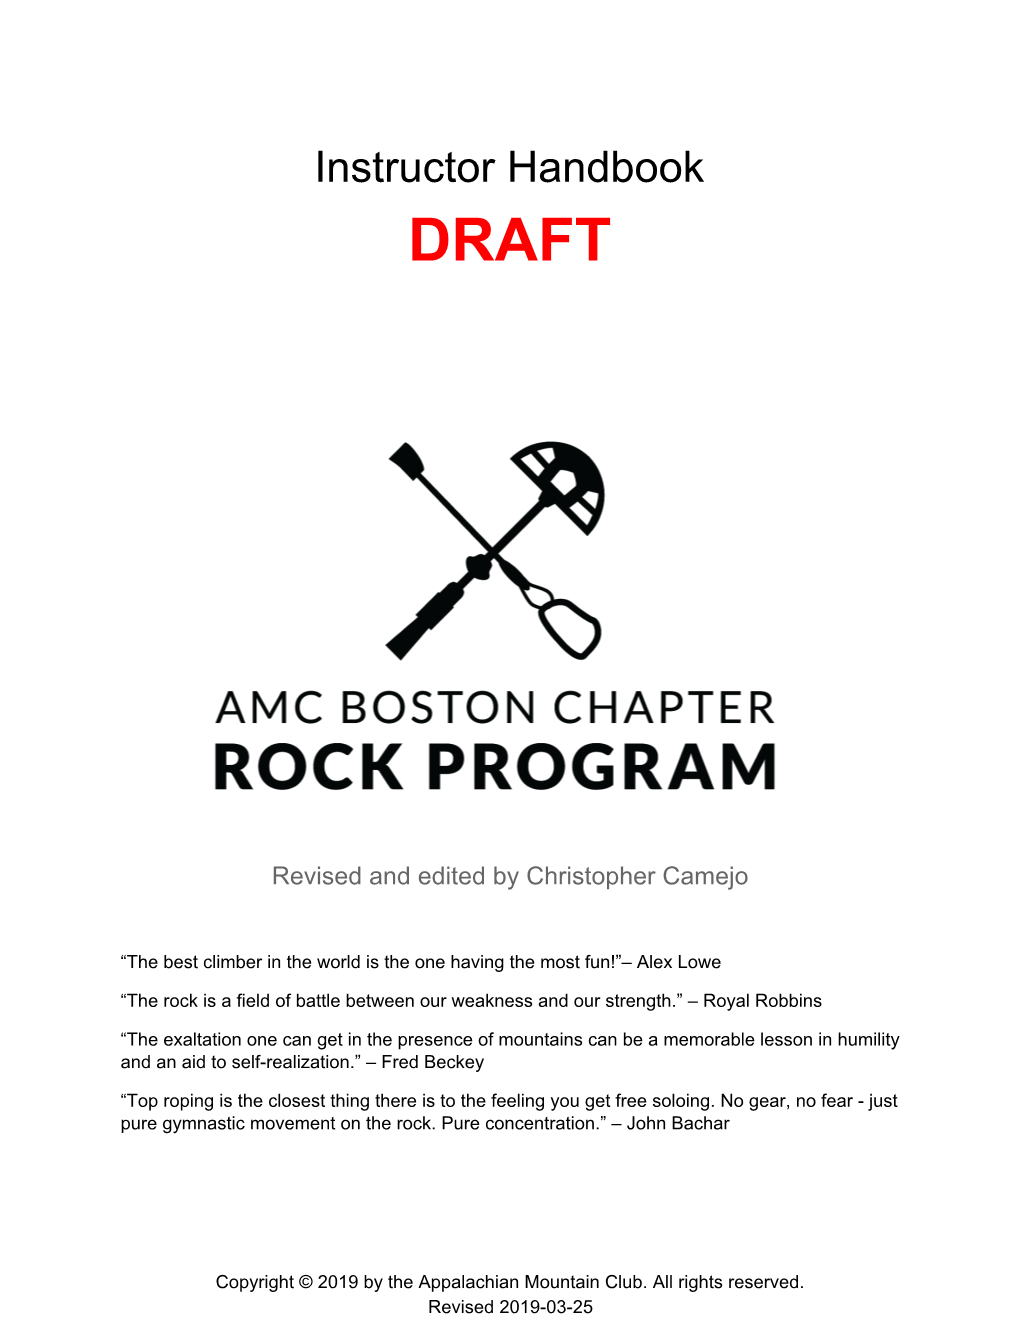 Instructor Handbook DRAFT